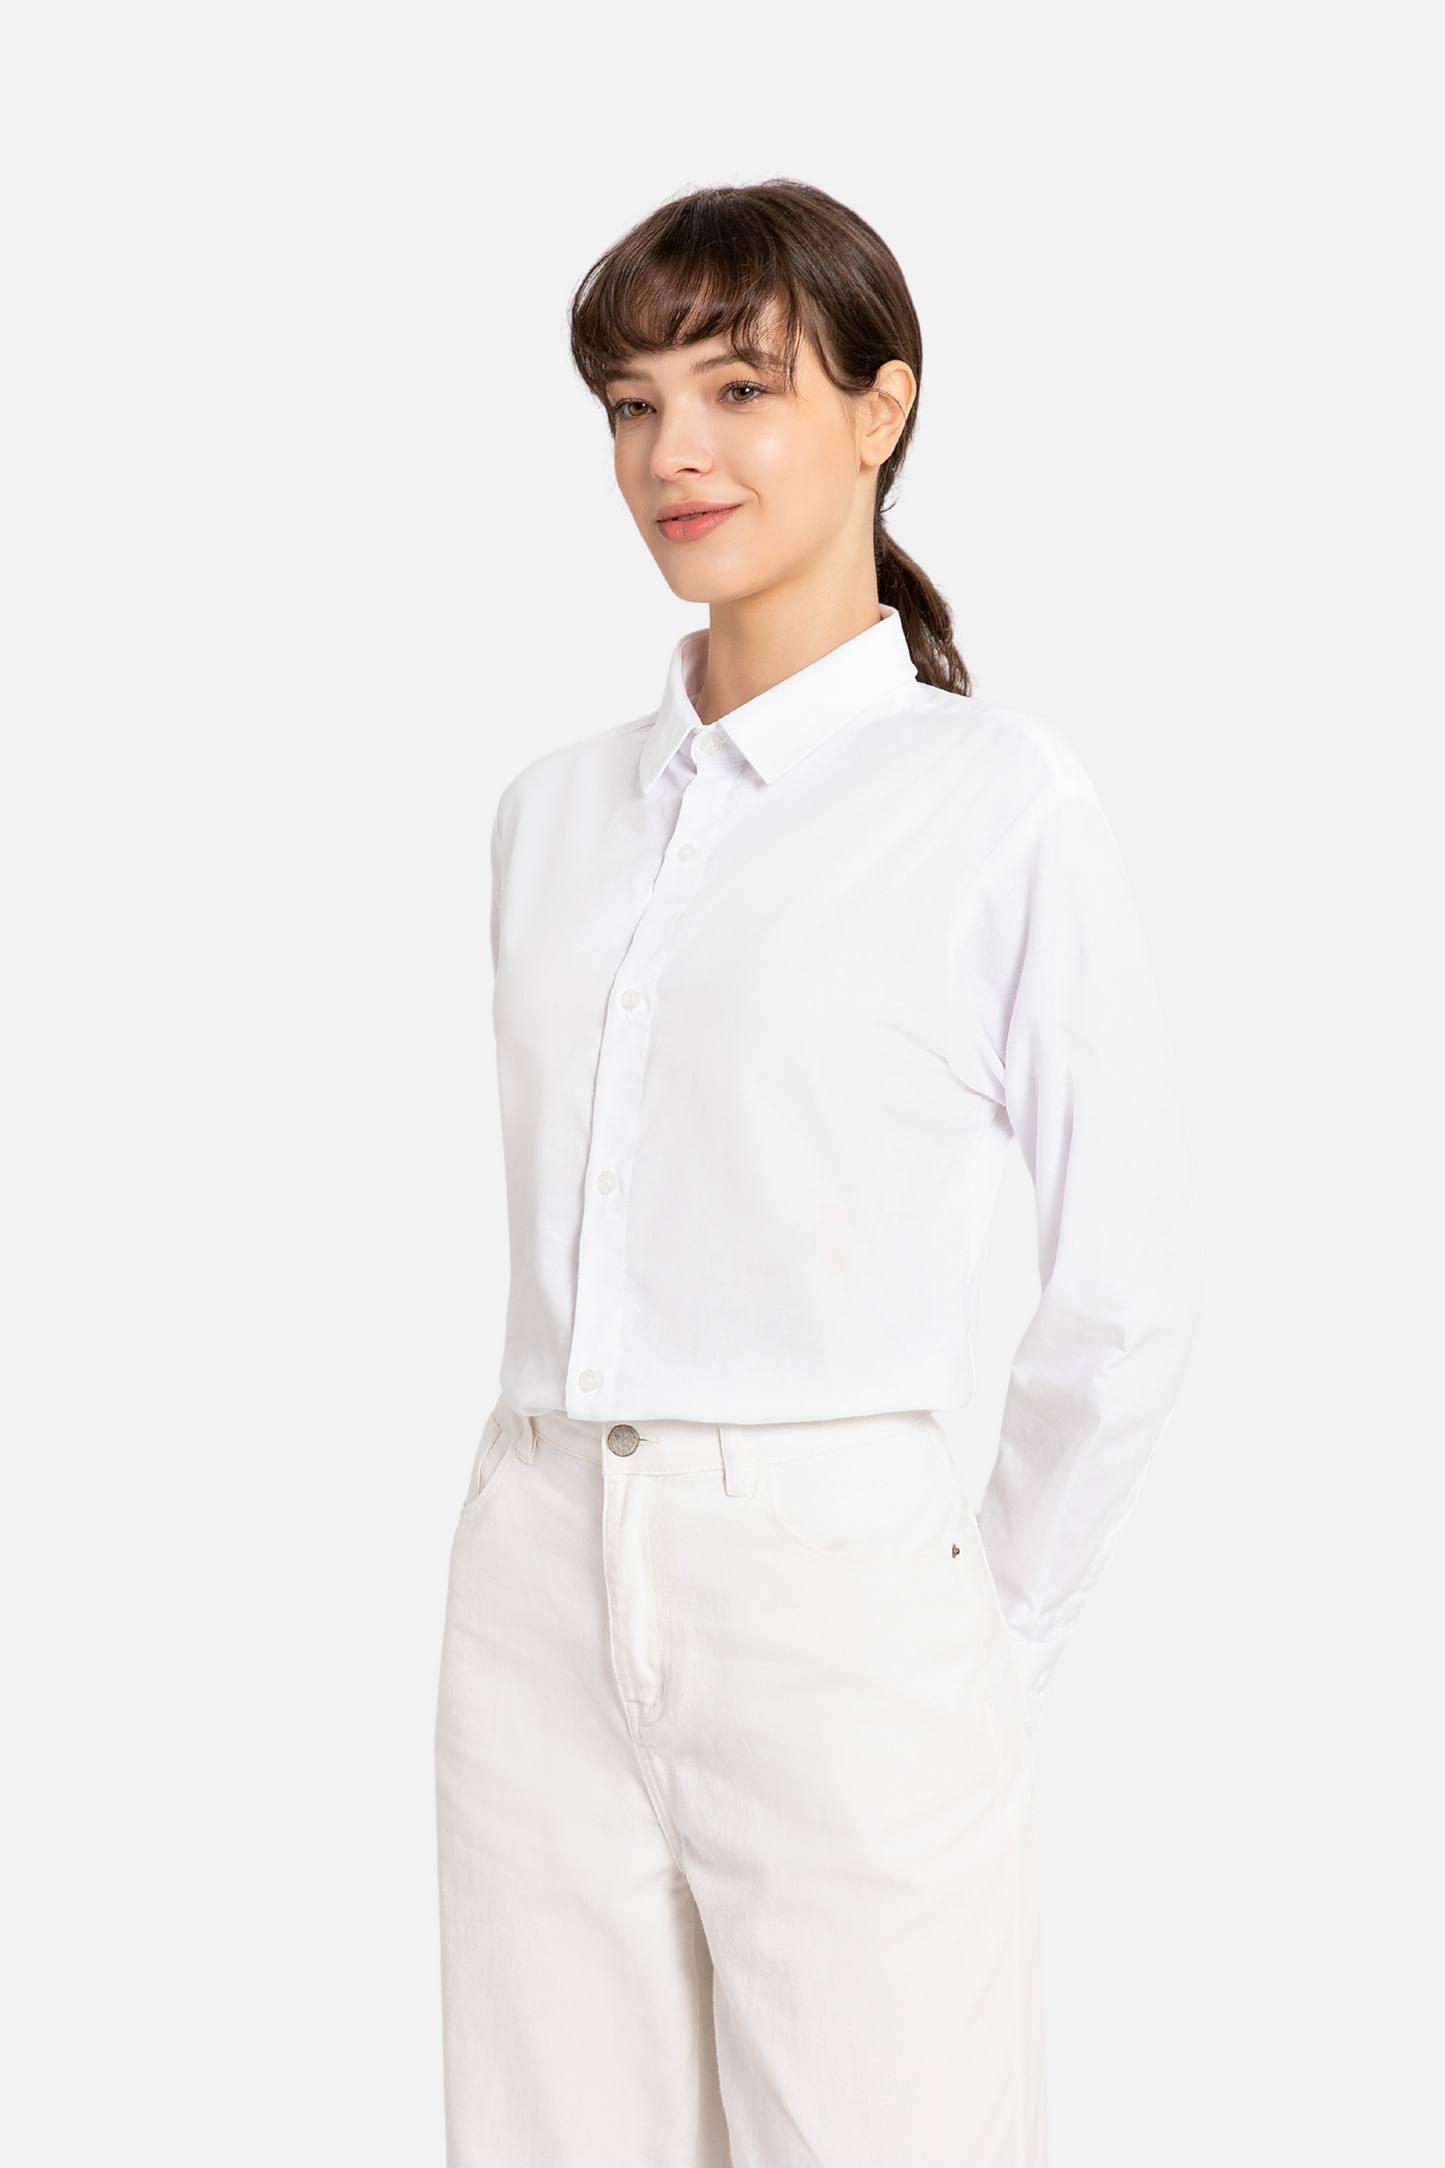 Skyler White Shirt, Long Sleeve